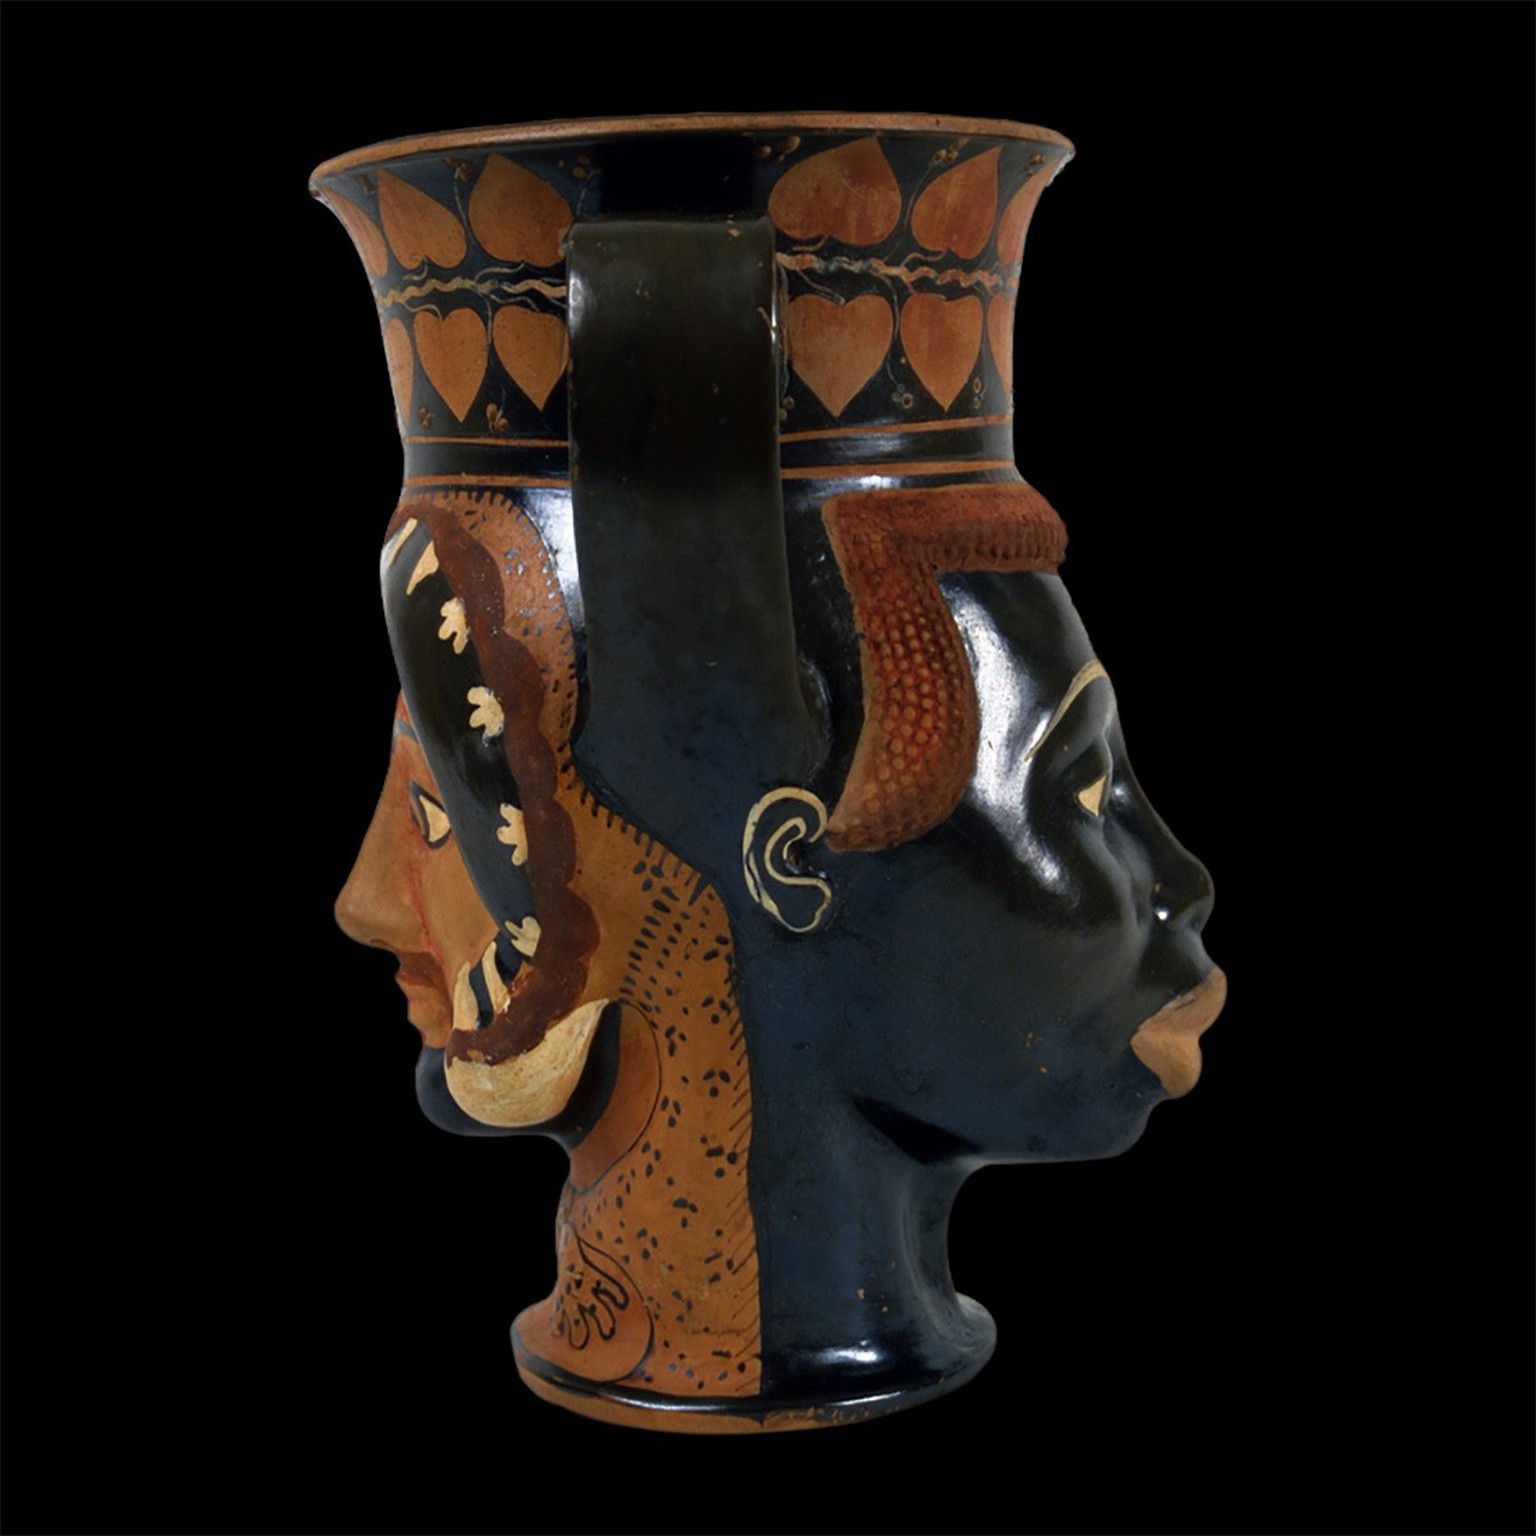 Keramikgefäss «Kantharos» mit dem Kopf eines Europäers und eines Afrikaners, 480-470 v. Chr.
https://www.museivaticani.va/content/museivaticani/en/collezioni/musei/museo-gregoriano-etrusco/sala-xix--e ...